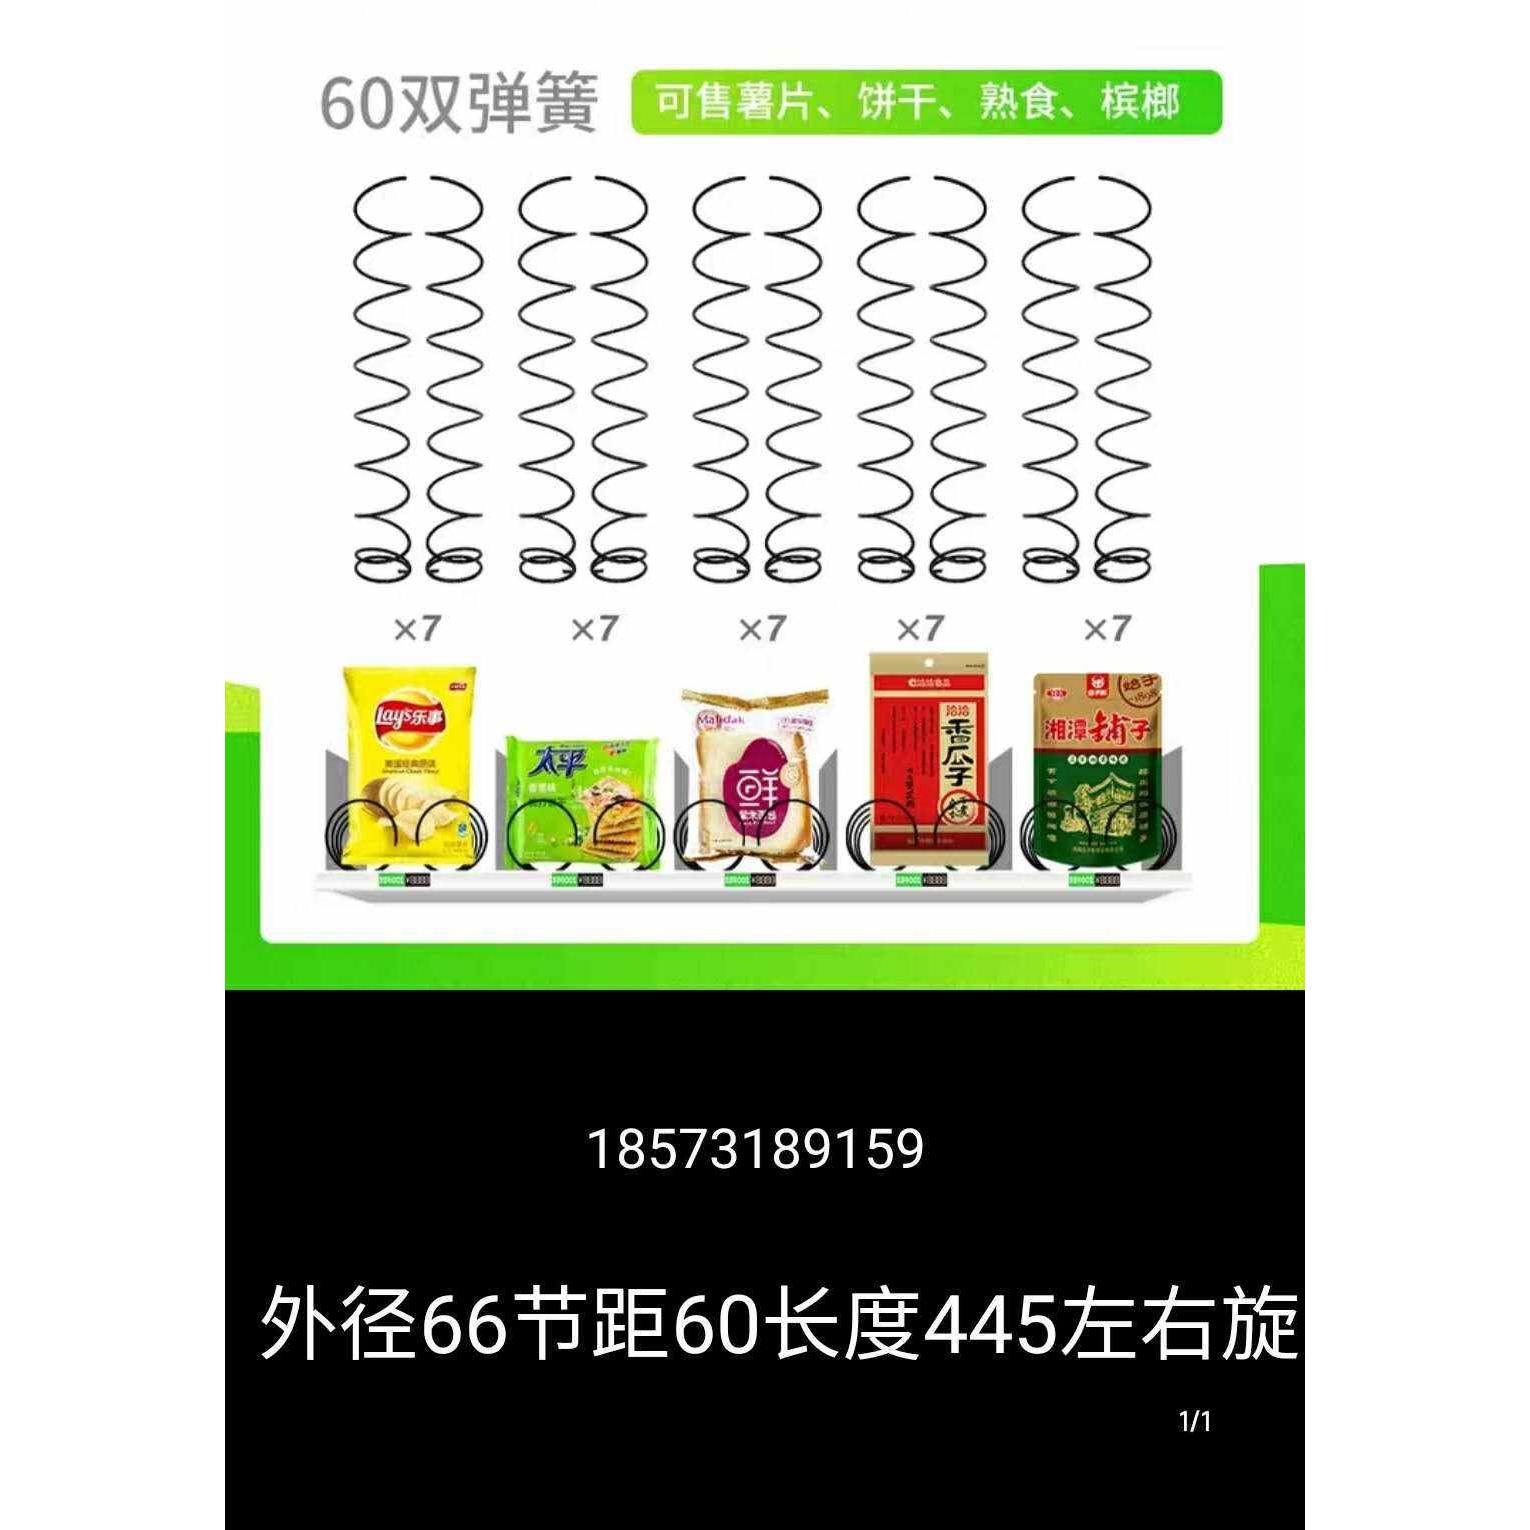 无人自动售货机弹簧厂家香烟零食饮料中吉中谷兴元艾丰出货配件